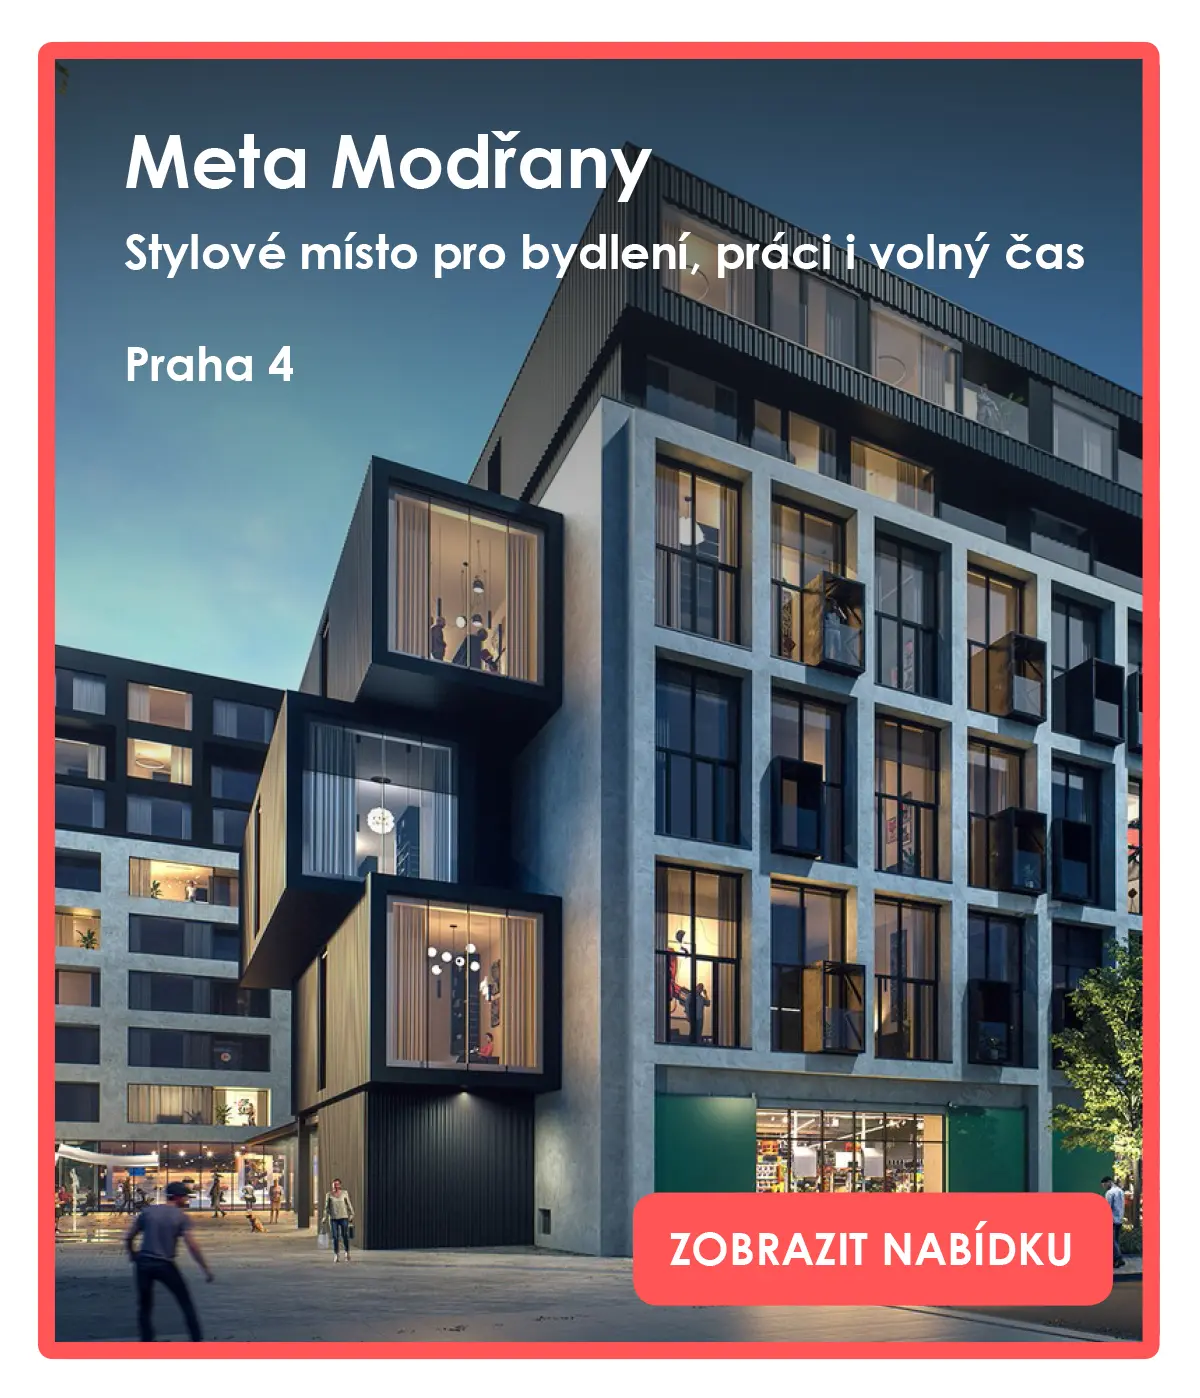 Prodej domu Nebušice - %%title%% k nastěhování %%ct_property_material%%.